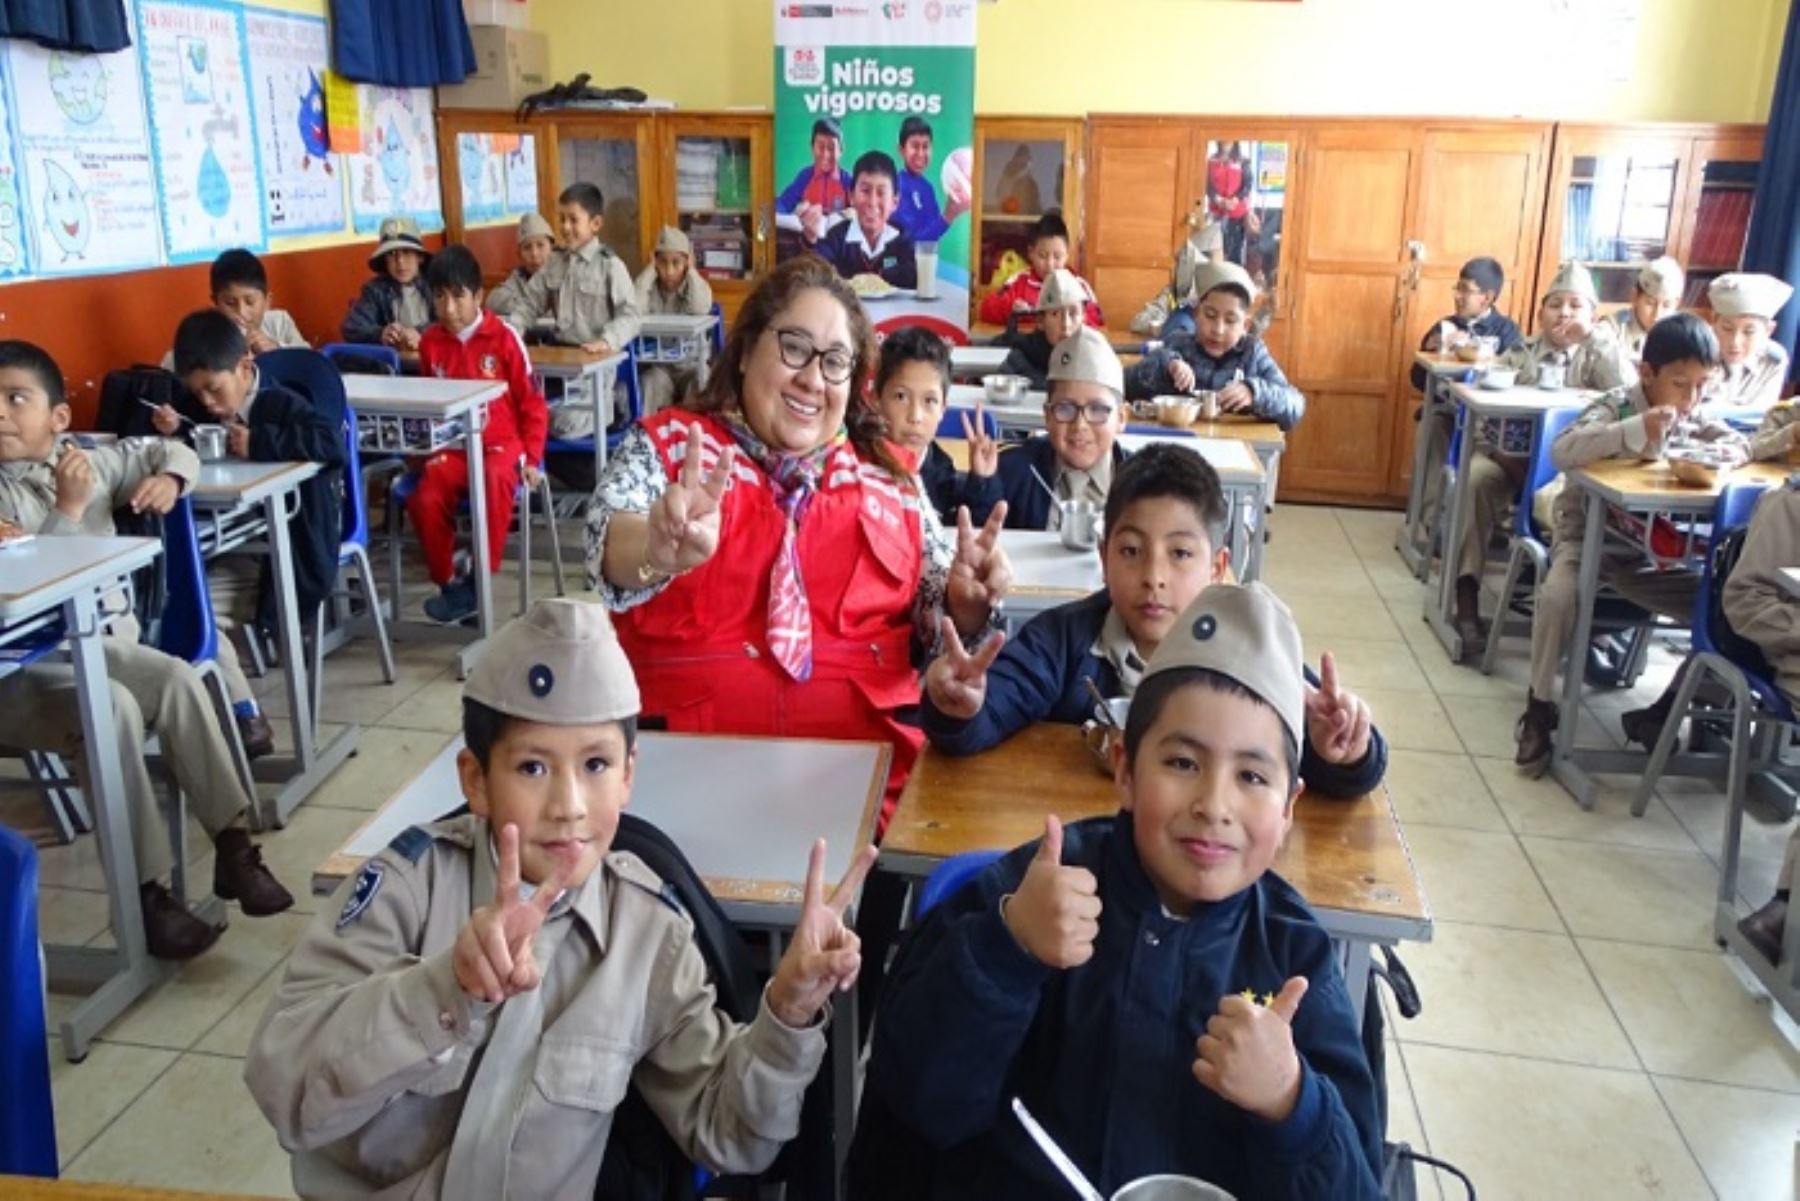 En la provincia de Cusco se brinda servicio alimentario escolar a 445 escuelas con 46,849 estudiantes; mientras que en el distrito de Cusco se atiende a 16,995 usuarios.